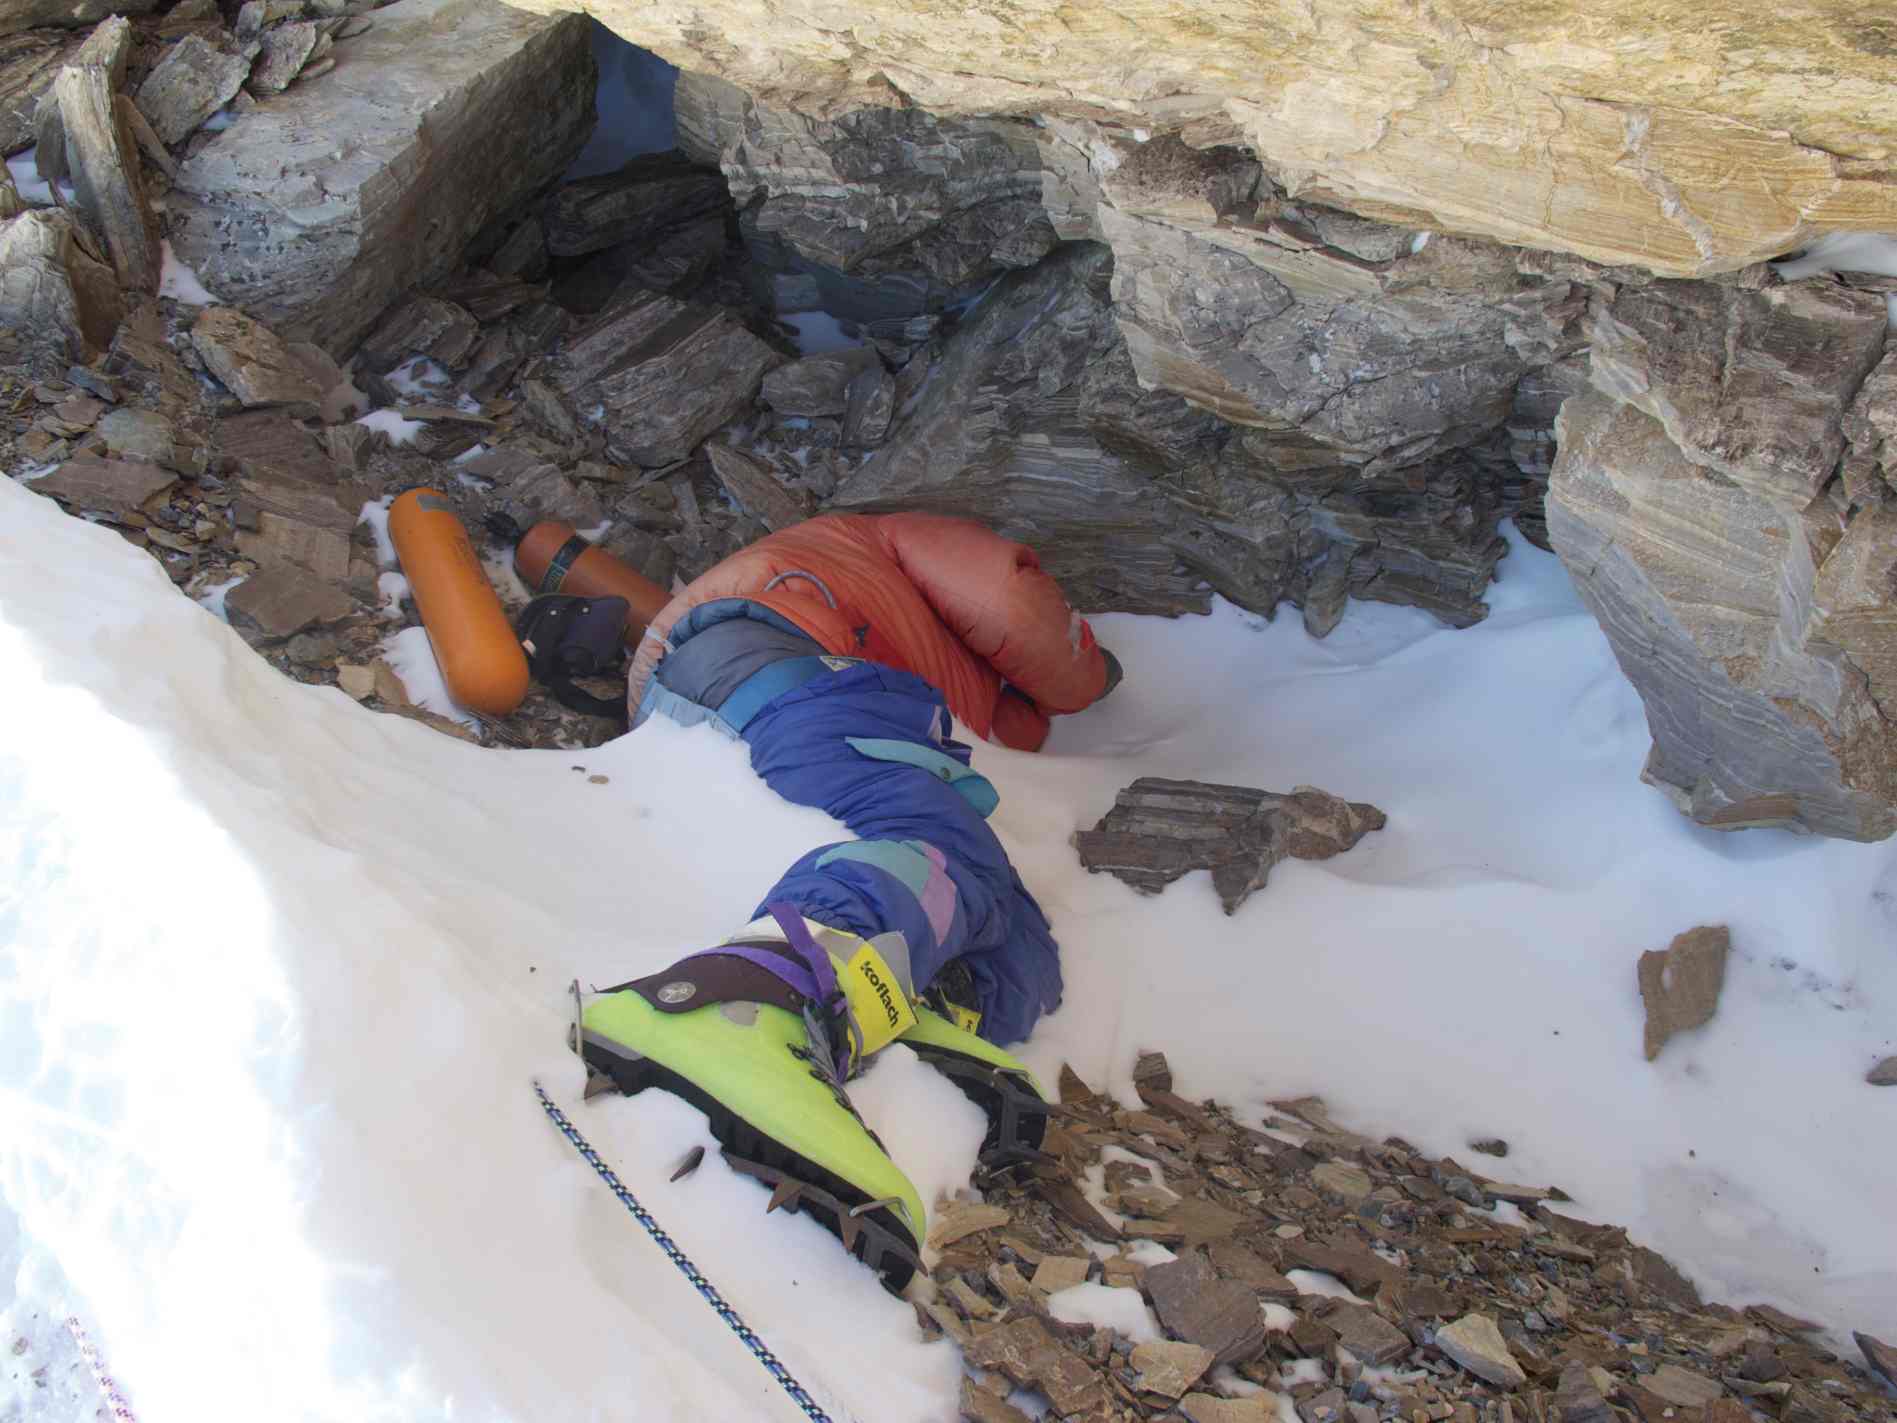 “绿色靴子”的照片，印度登山者死于山的东北山脊。 1996年的珠穆朗玛峰